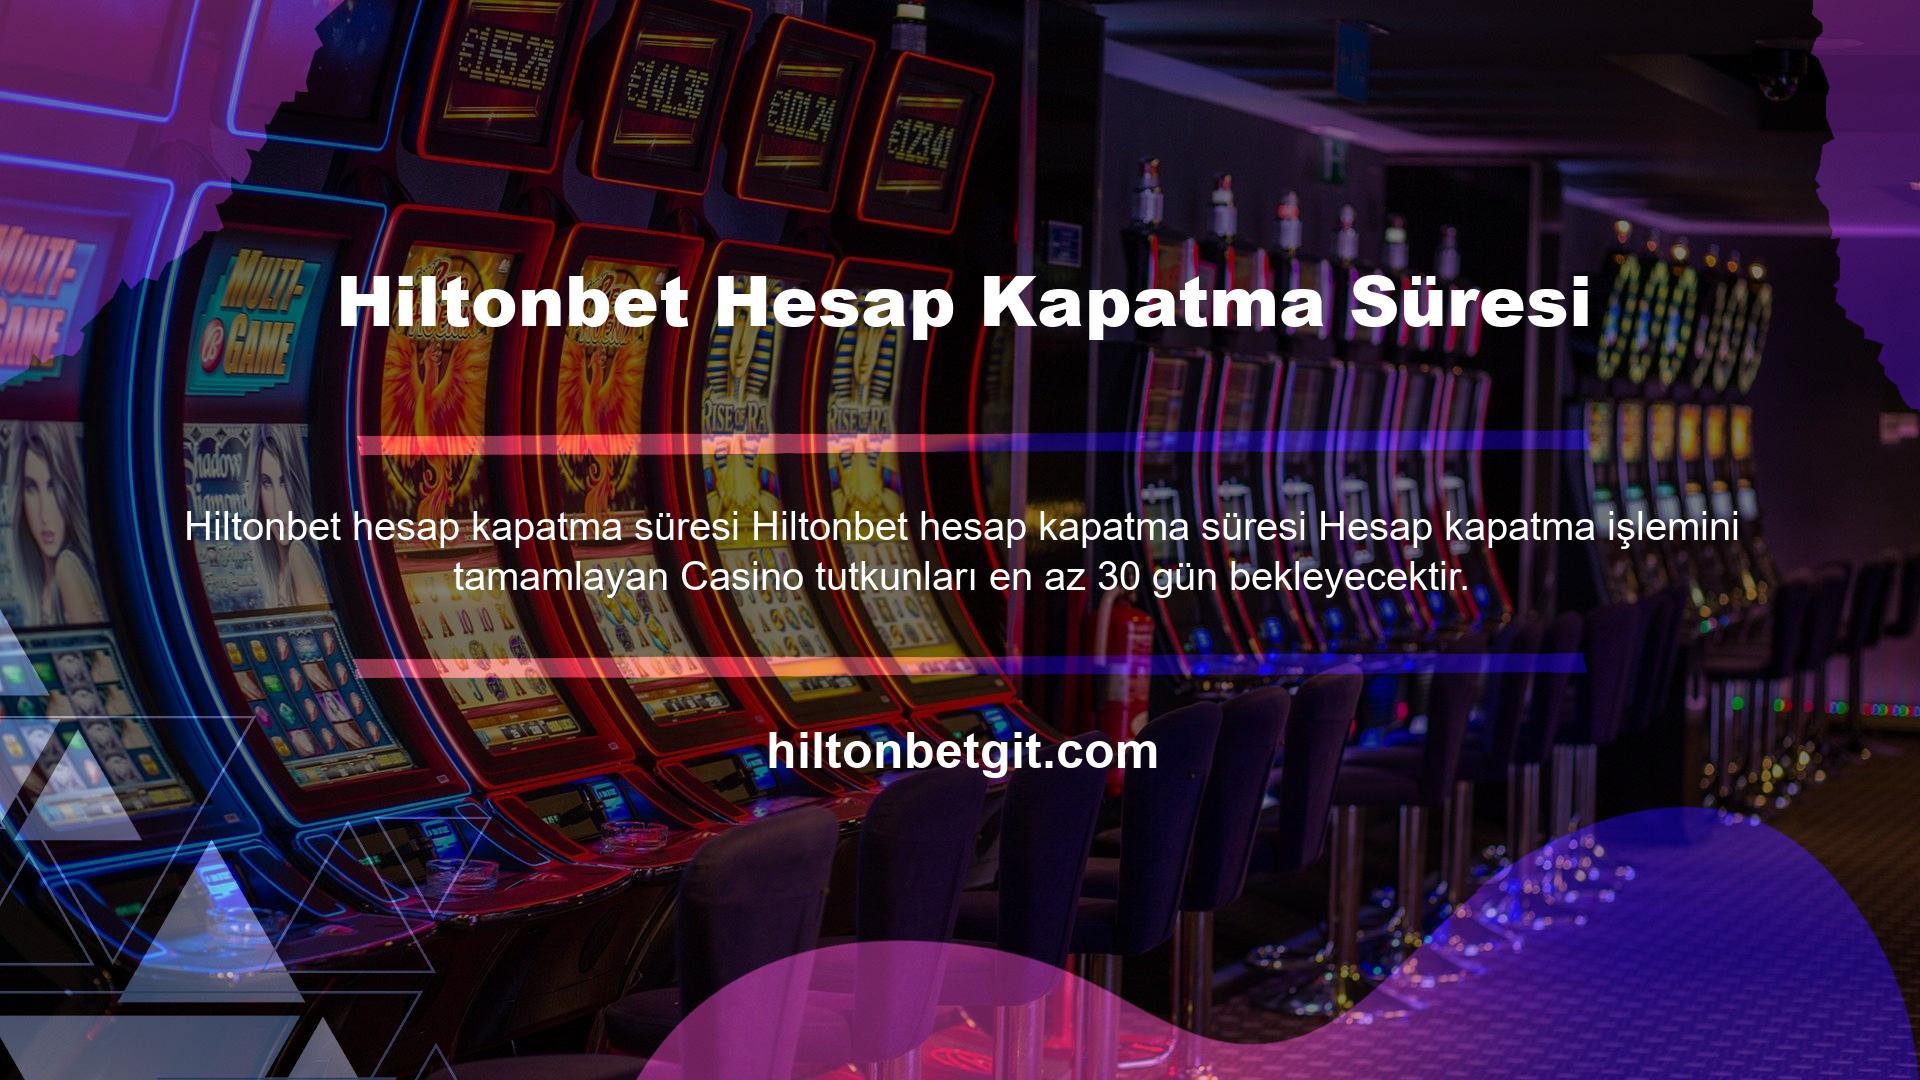 Hesap kapatma sebebi Hiltonbet casino sitesinde vakit geçiren casino severler için 30 gündür